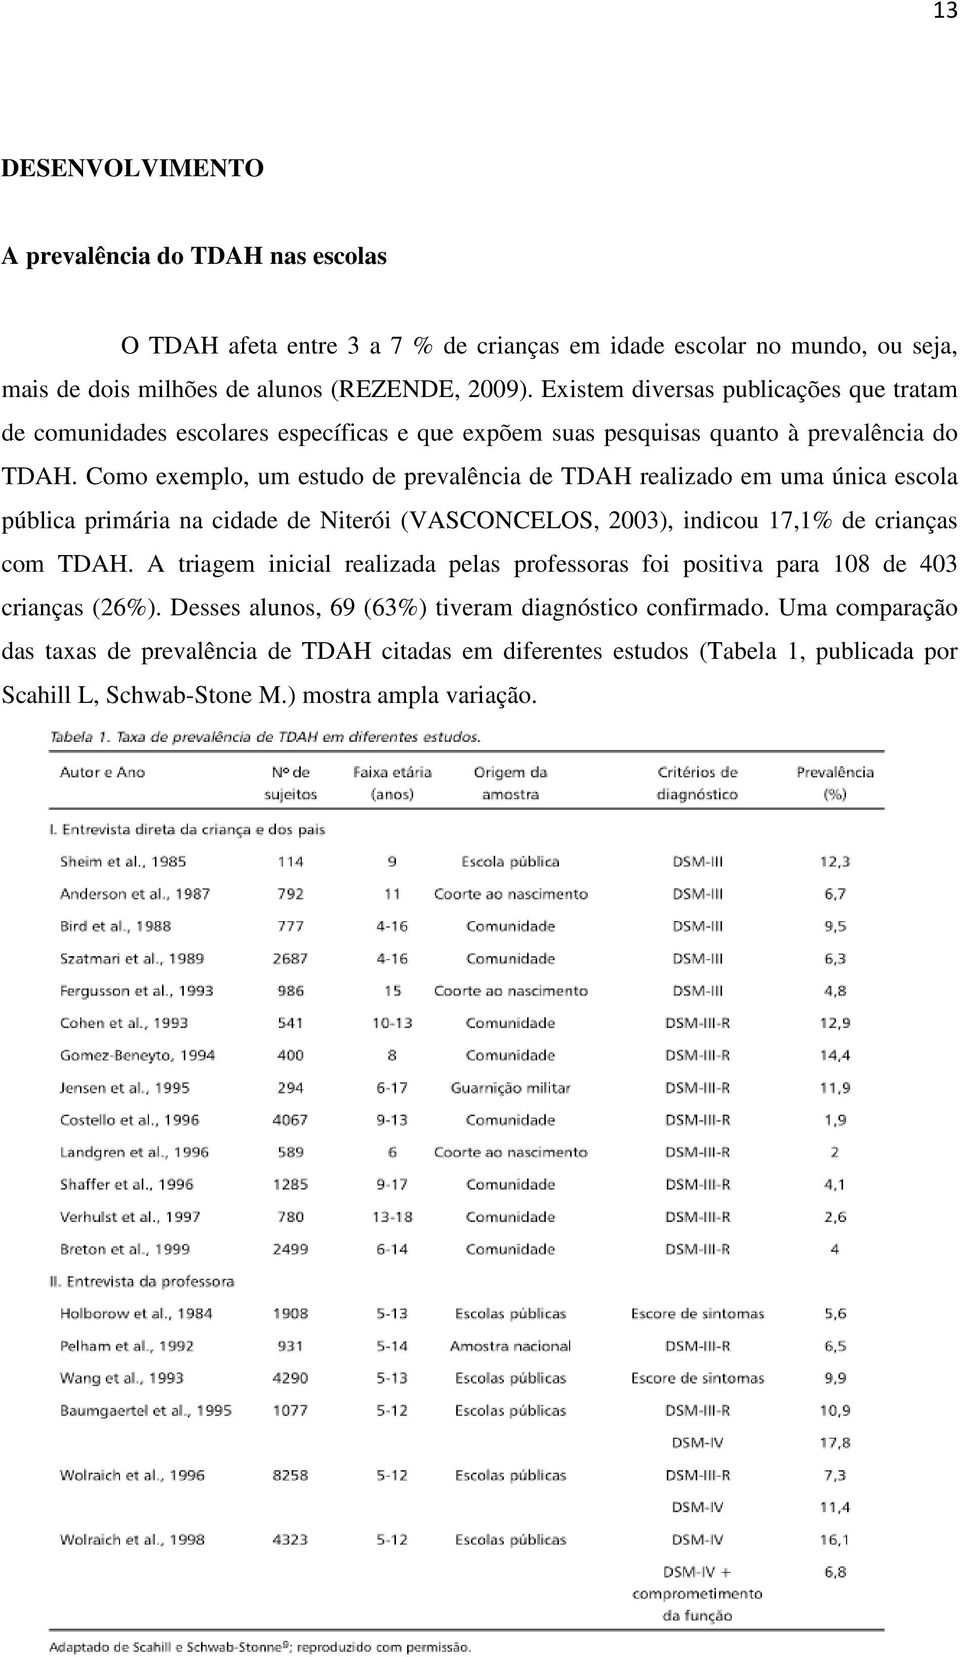 Como exemplo, um estudo de prevalência de TDAH realizado em uma única escola pública primária na cidade de Niterói (VASCONCELOS, 2003), indicou 17,1% de crianças com TDAH.